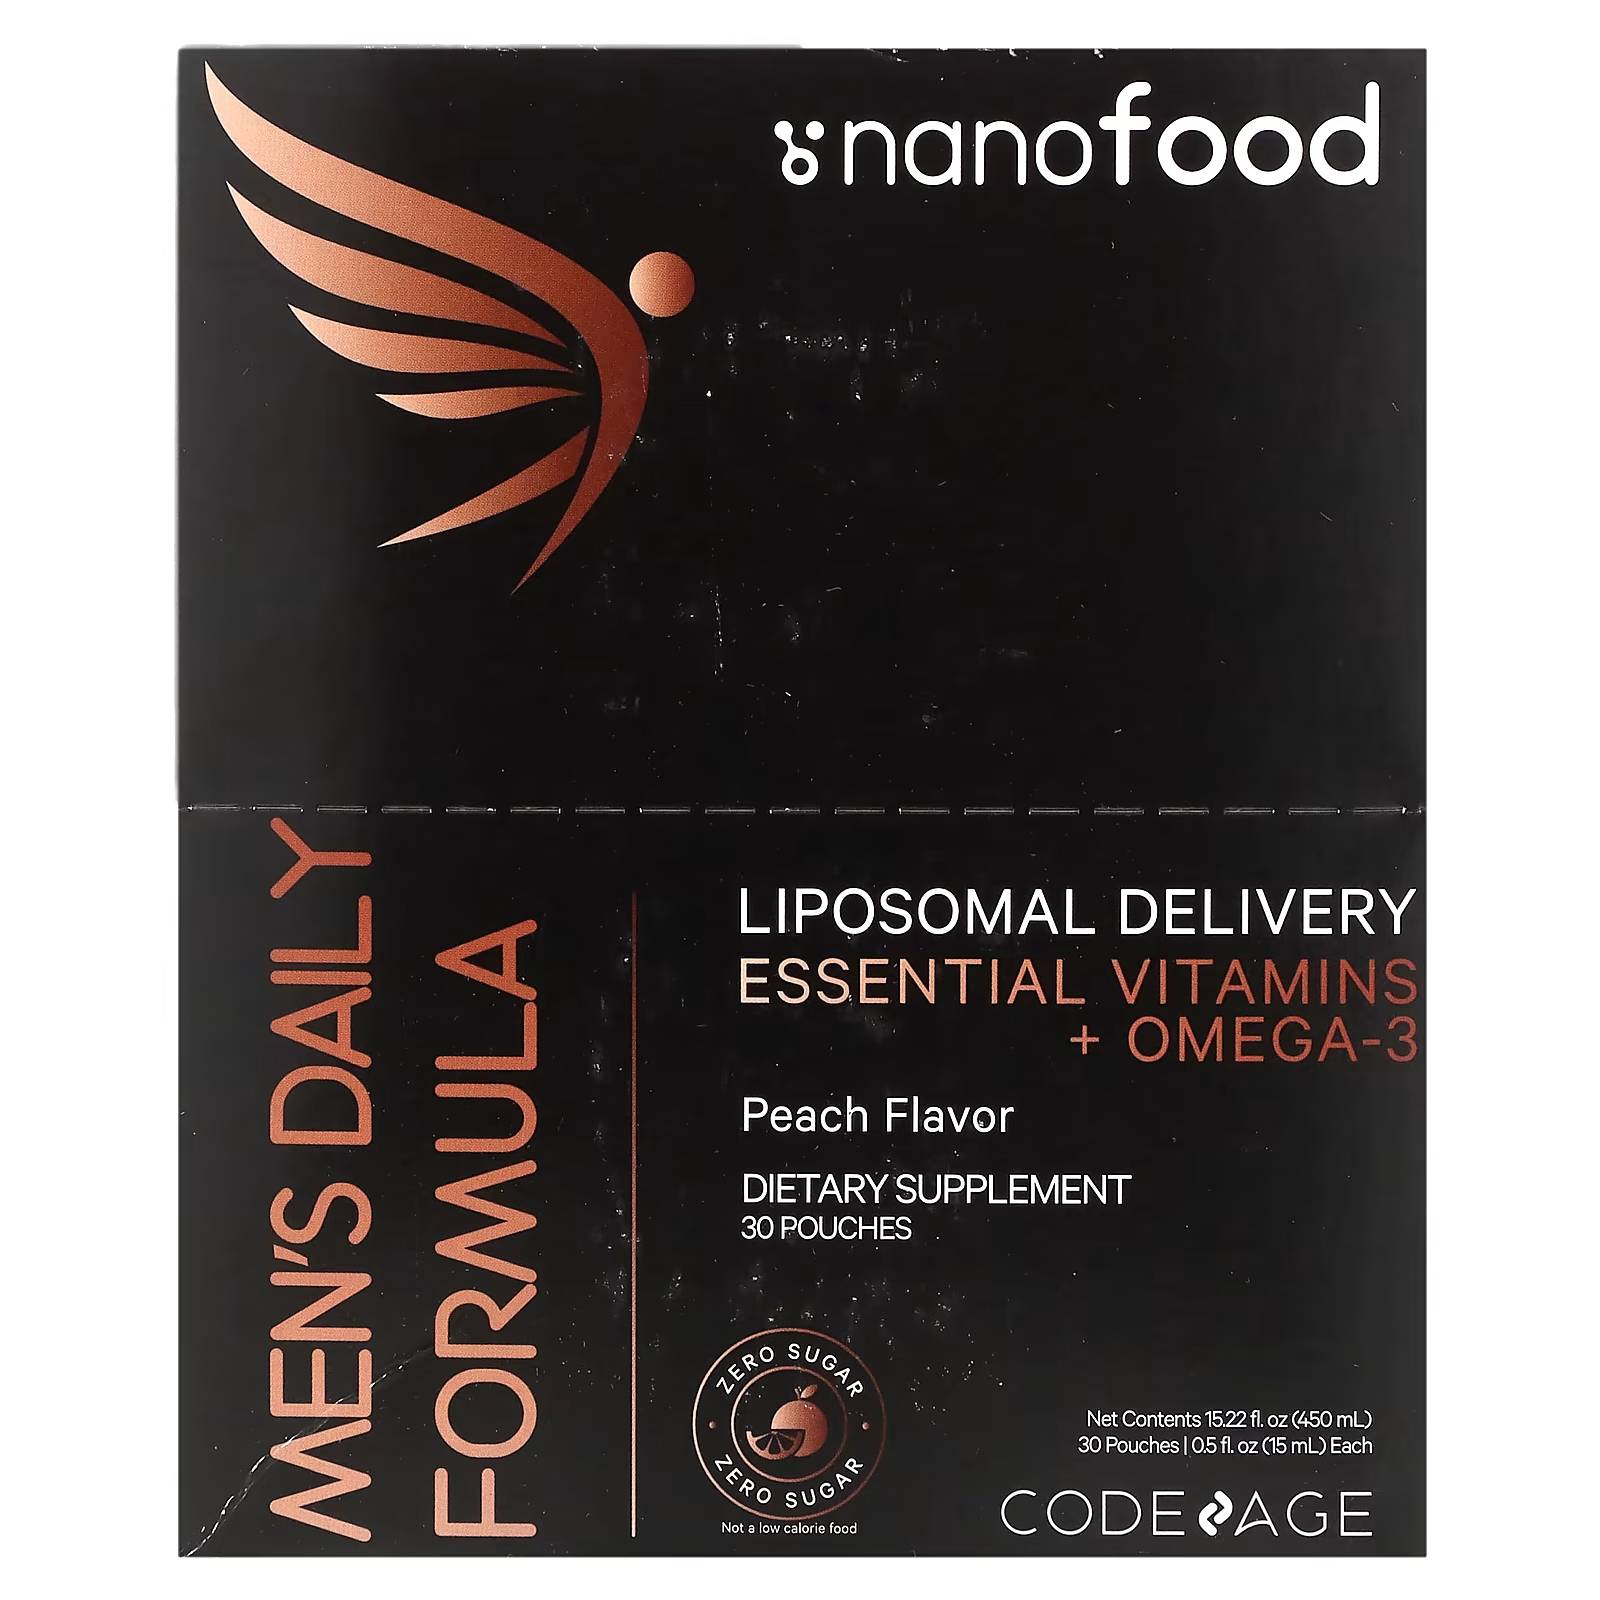 цена Формула мужская Codeage Nanofood для липосомальной доставки, незаменимые витамины + омега-3, 30 пакетиков